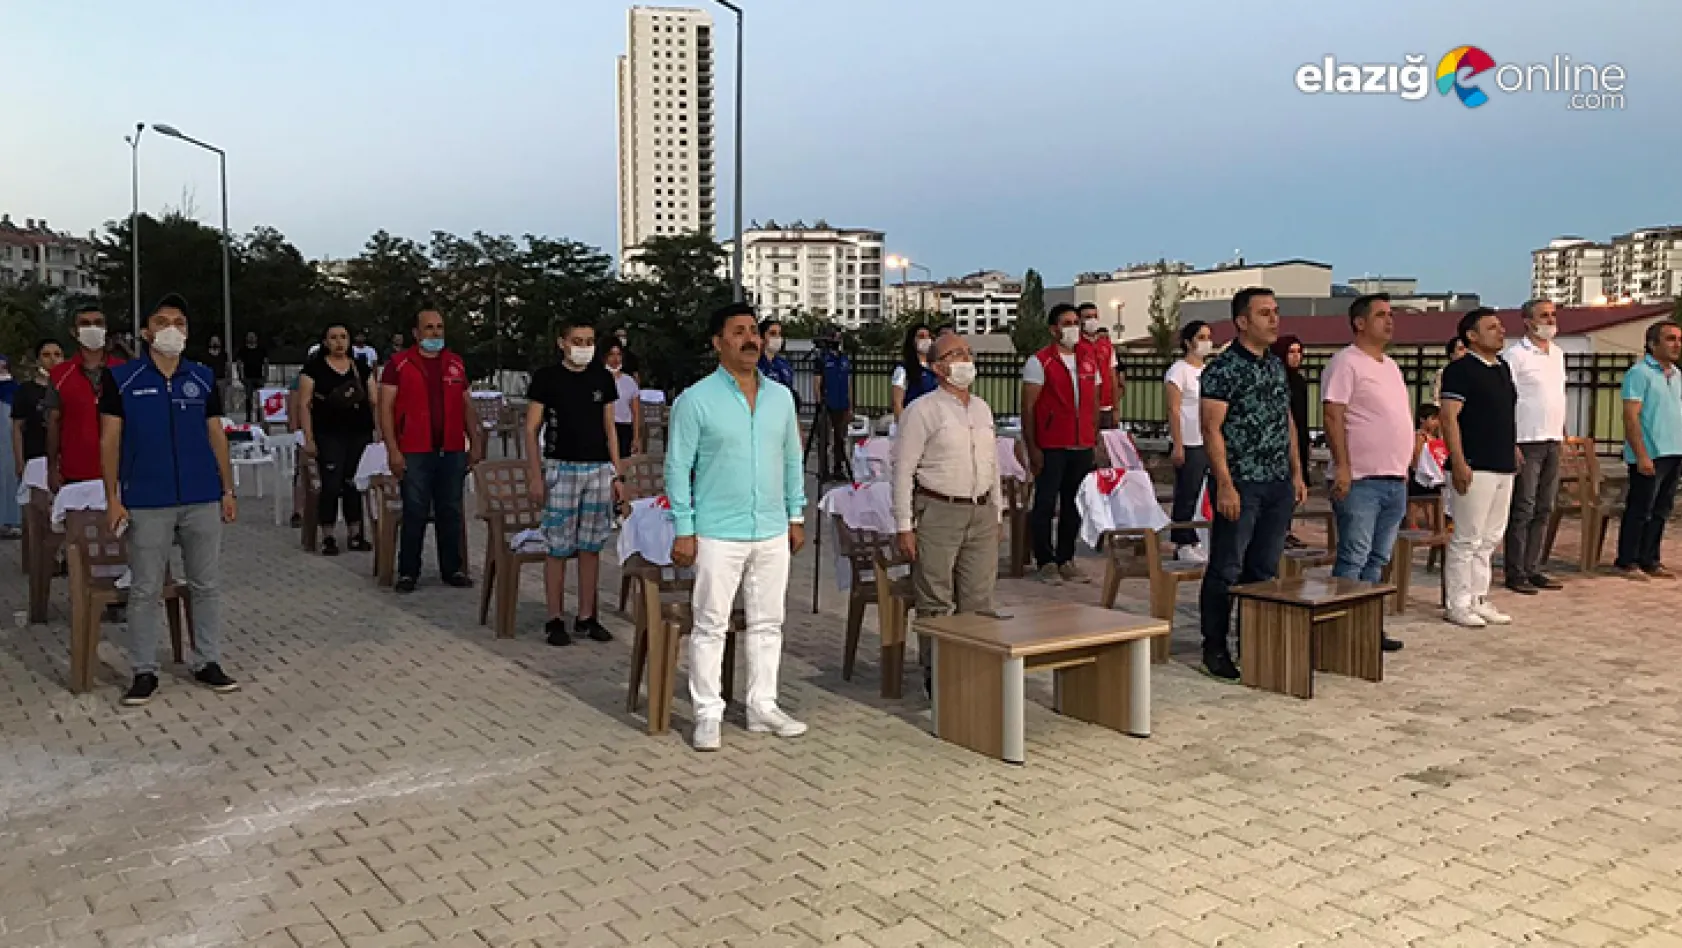 Elazığ'da 15 Temmuz Demokrasi ve Milli Birlik Günü etkinlikleri düzenlendi